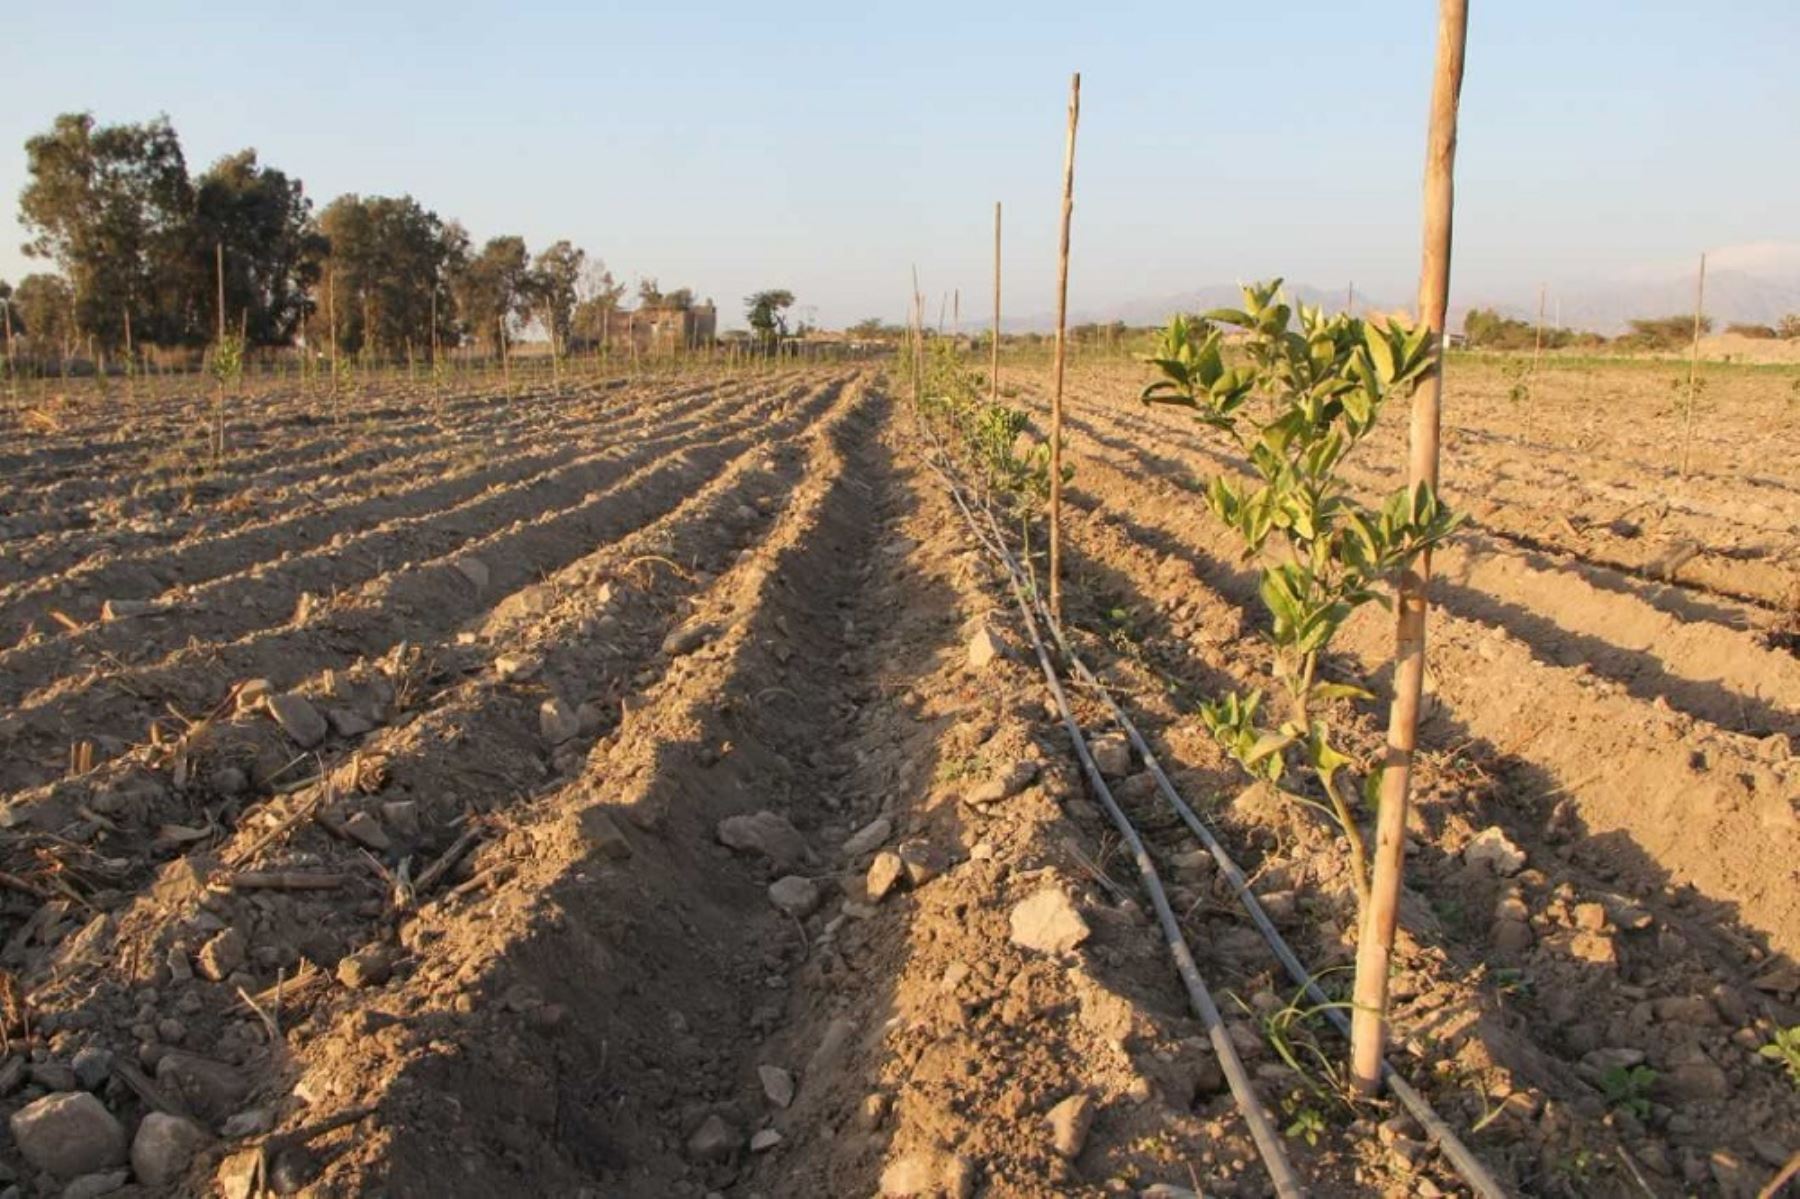 El Ministerio de Agricultura y Riego (Minagri) invierte más de 11.2 millones de soles en la instalación de un sistema de riego y habilitación de reservorios para potenciar la producción de 178 hectáreas de cultivo en la región de Ica, informó el titular del sector, José Hernández.